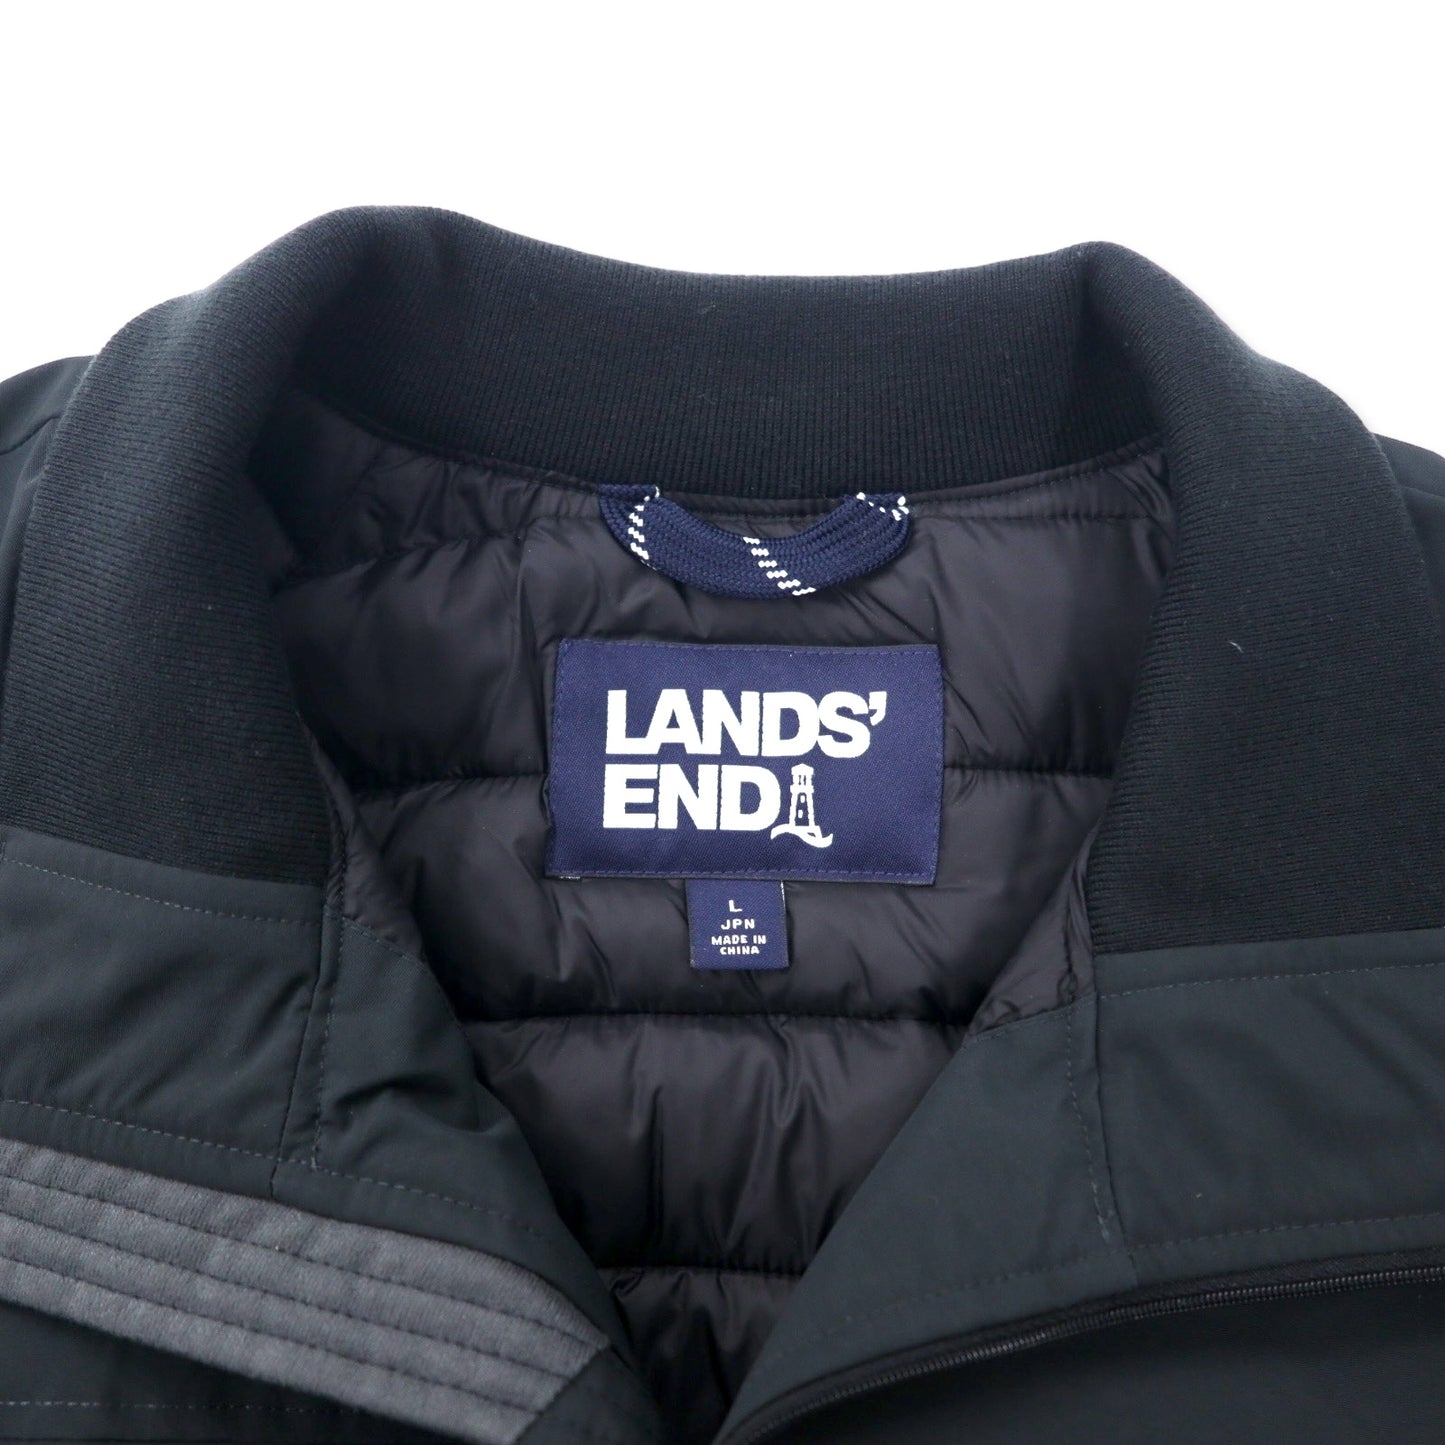 LANDS' END プリマロフト ダウンジャケット 中綿 L ブラック ナイロン 撥水 日本25周年モデル 513013